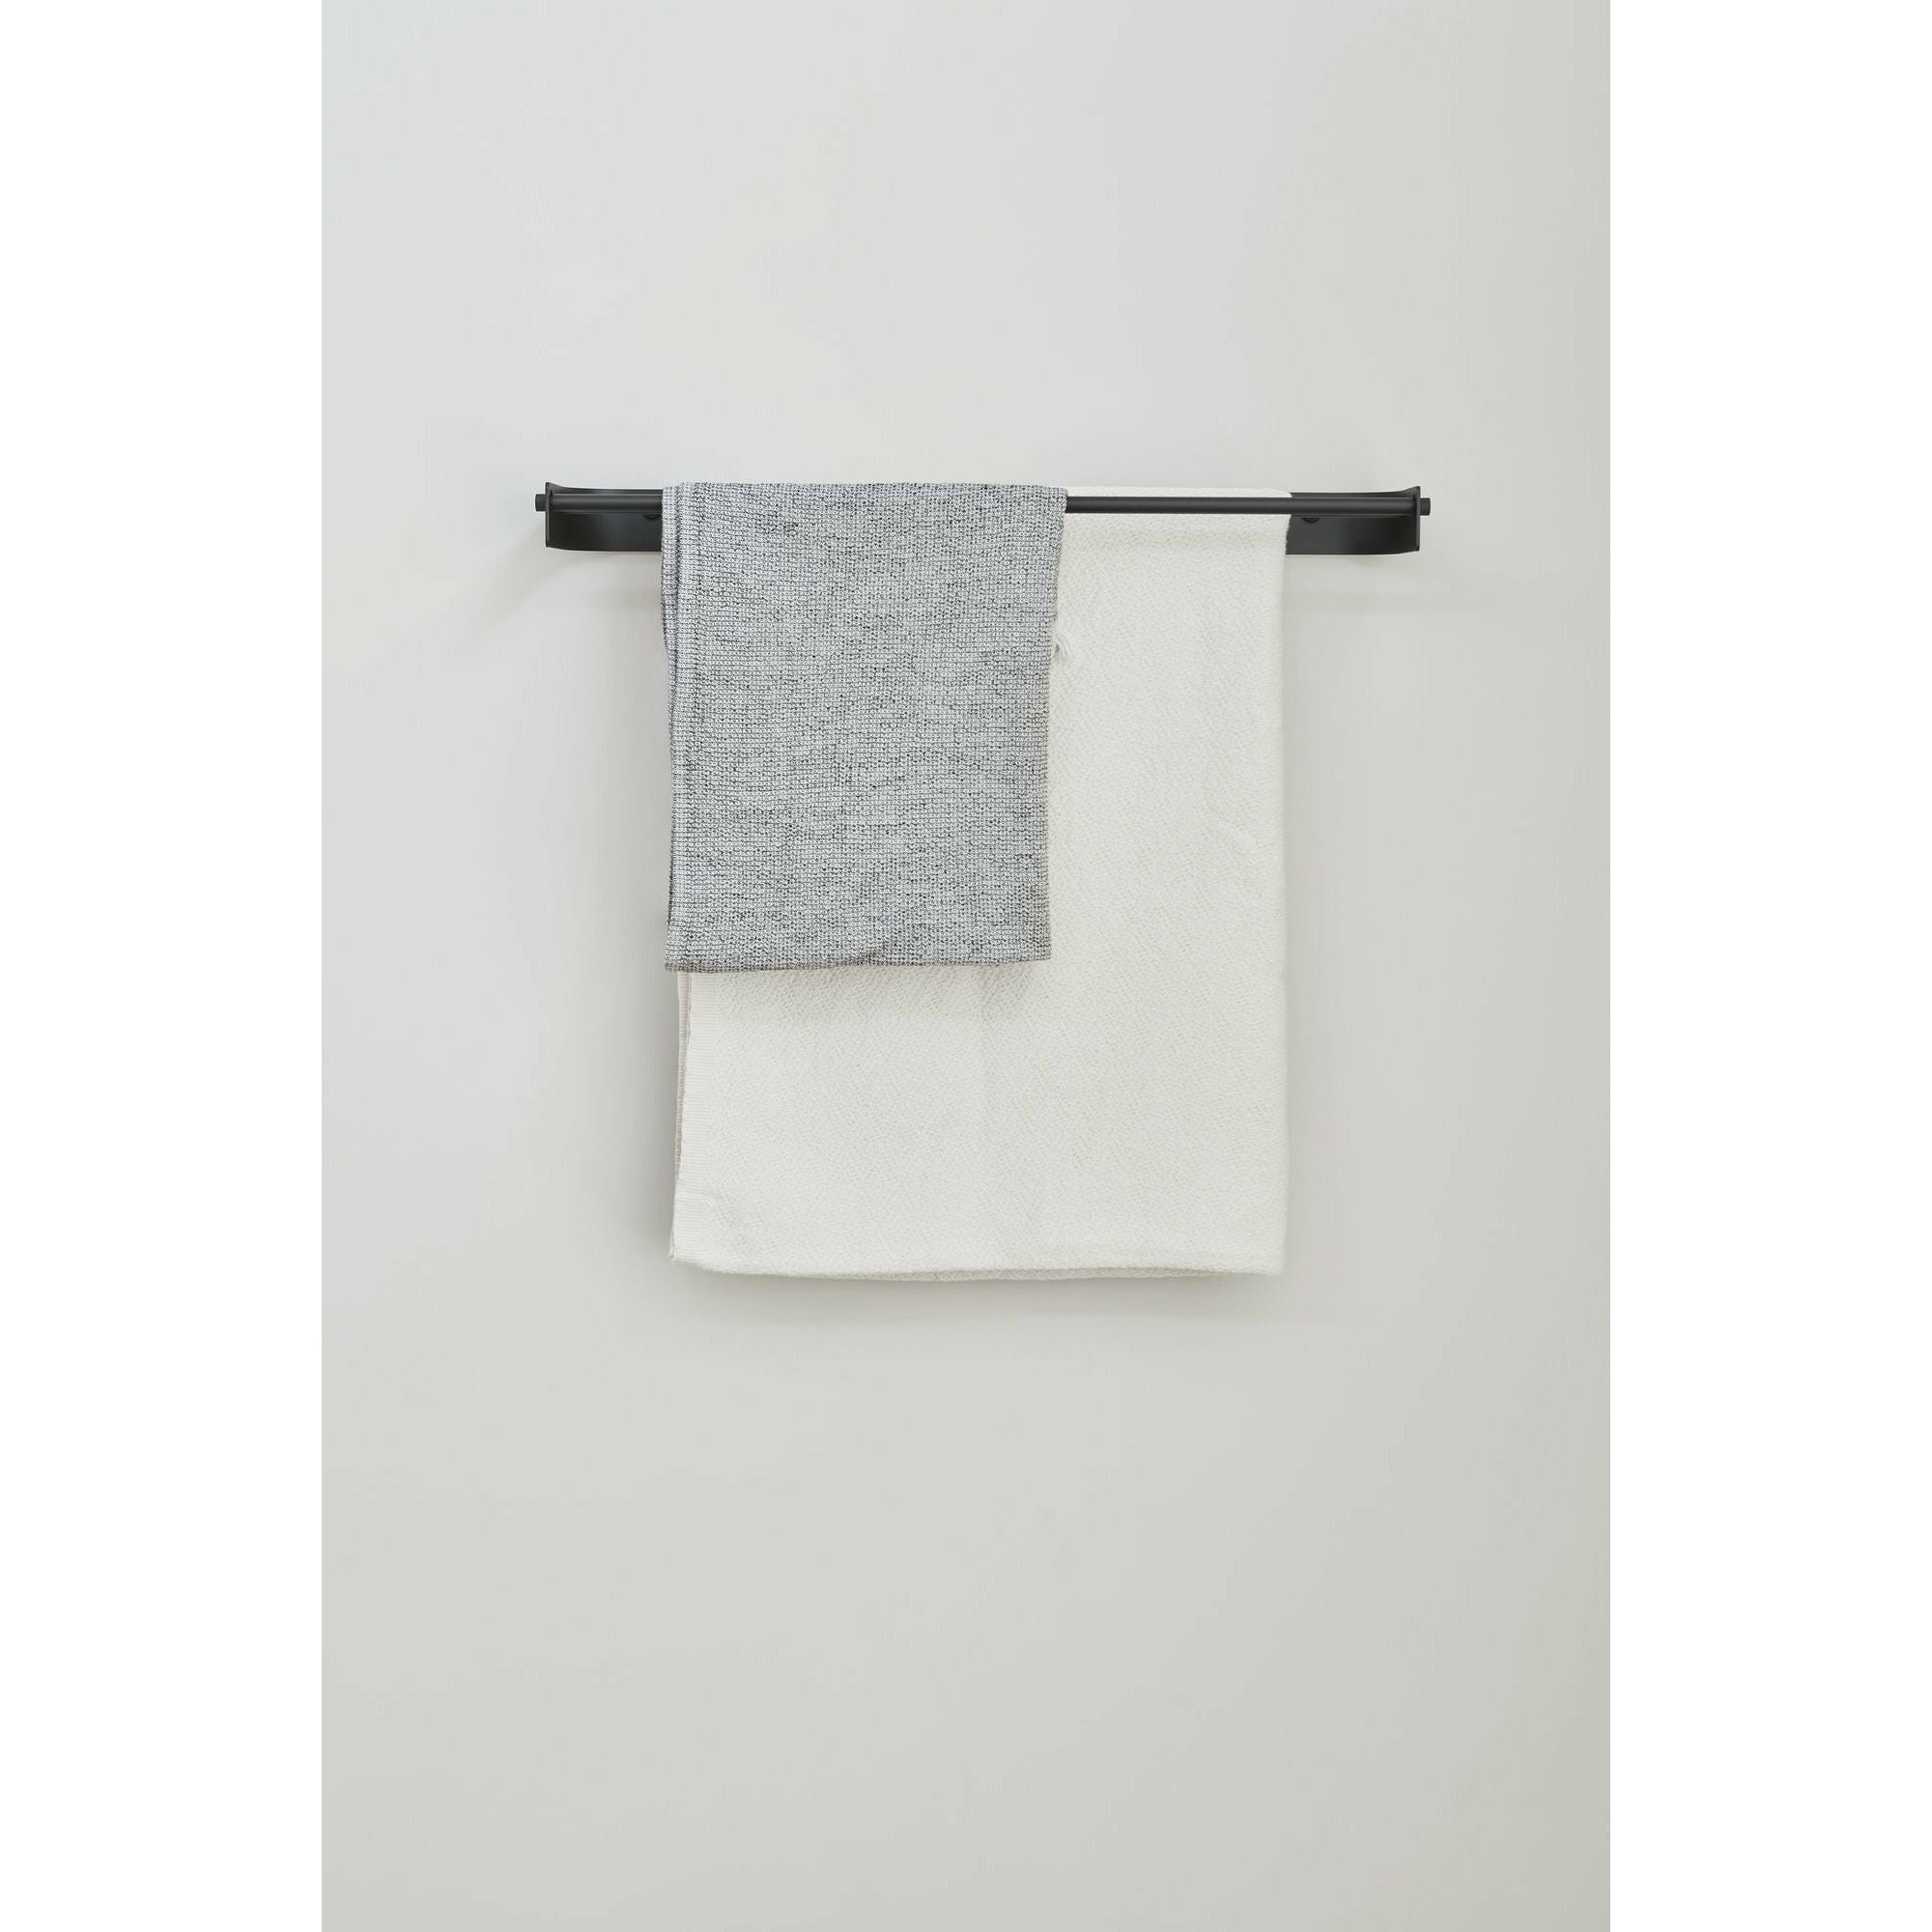 Form & Refine Podwójny pasek ręcznika łukowego. Czarna stal